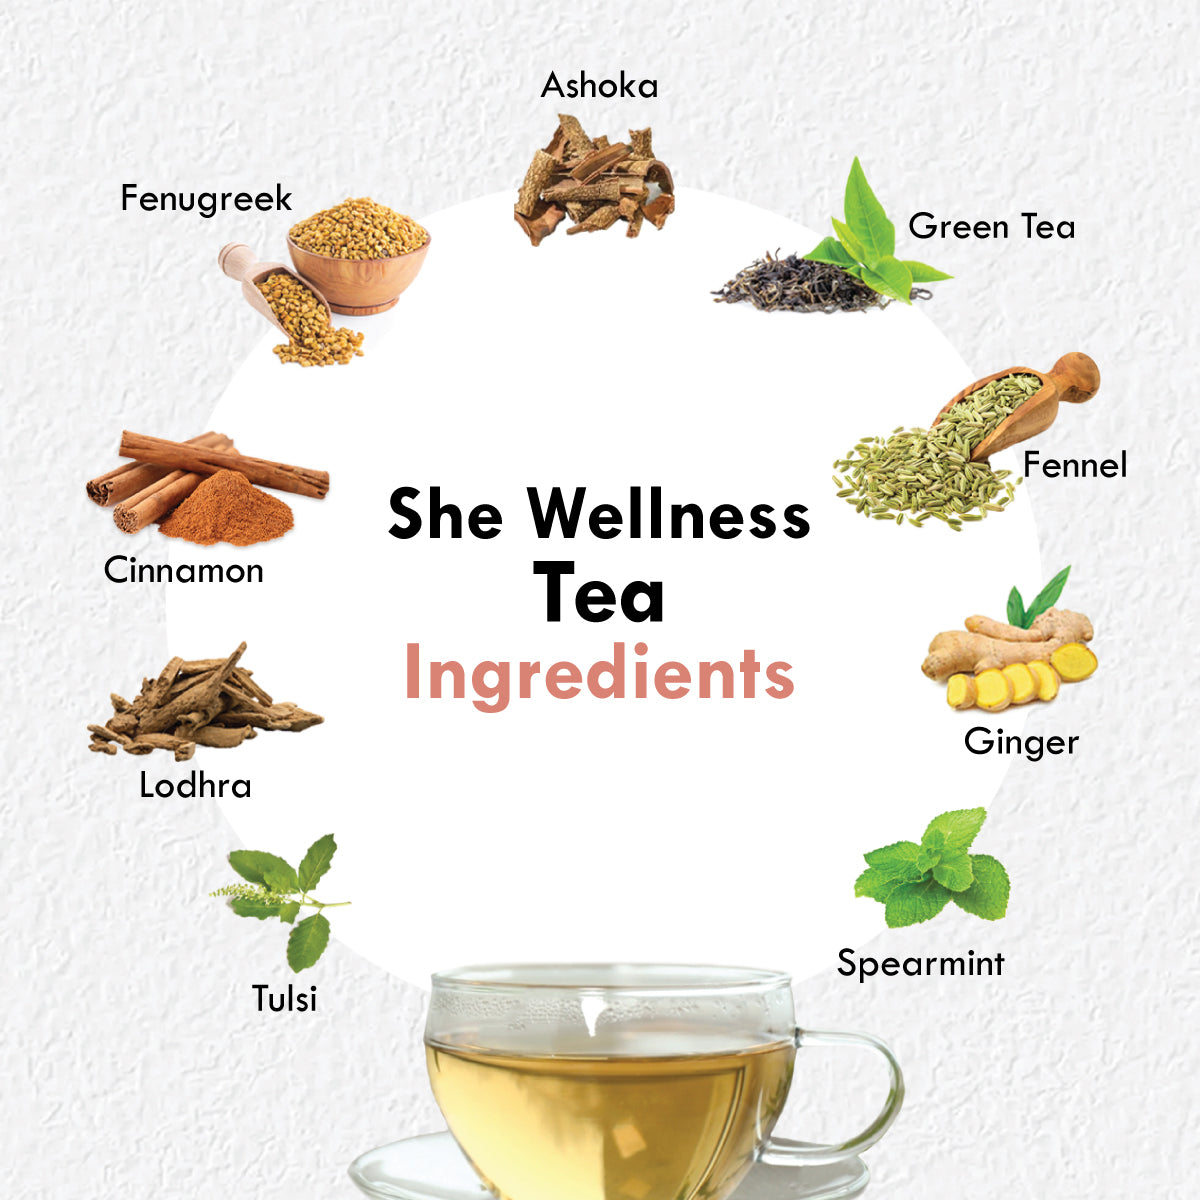 Freshville She Wellness Tea